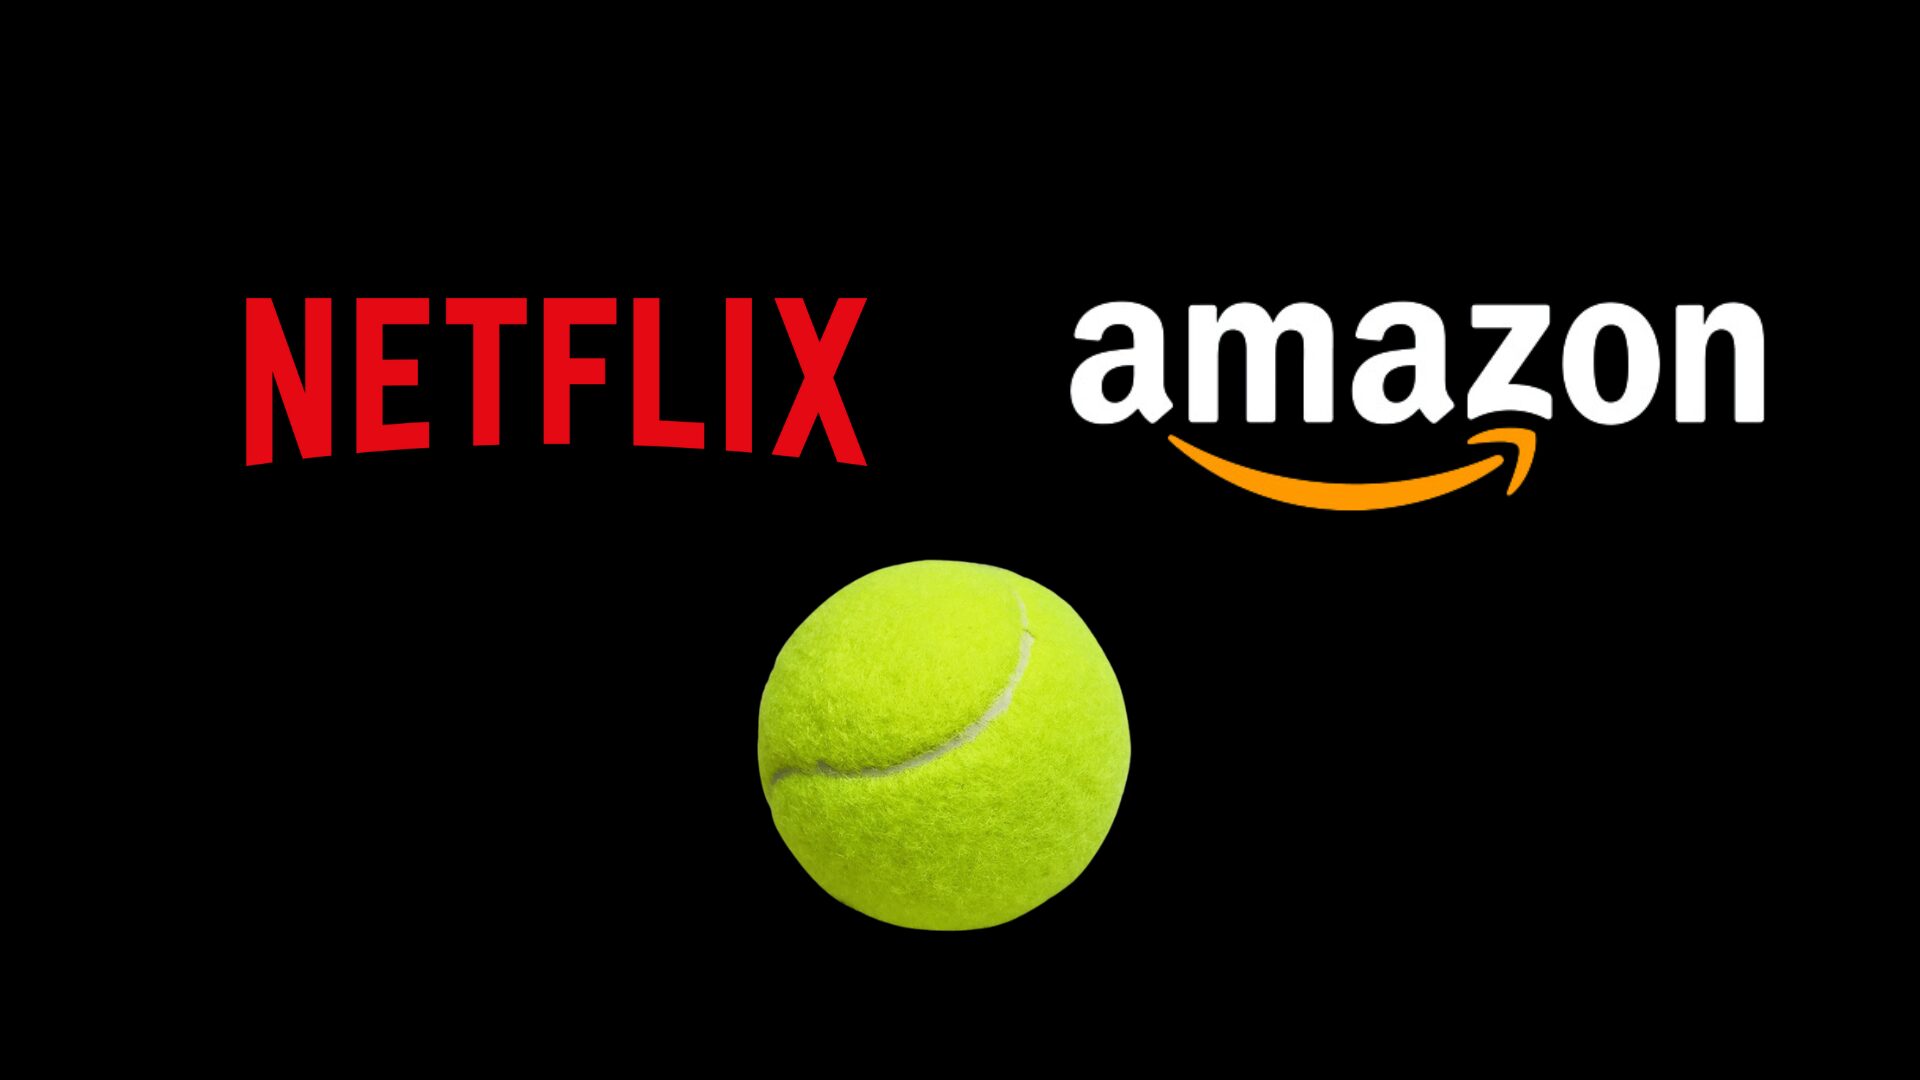 Netflix und Amazon hinter einer Schaltung von padel ?